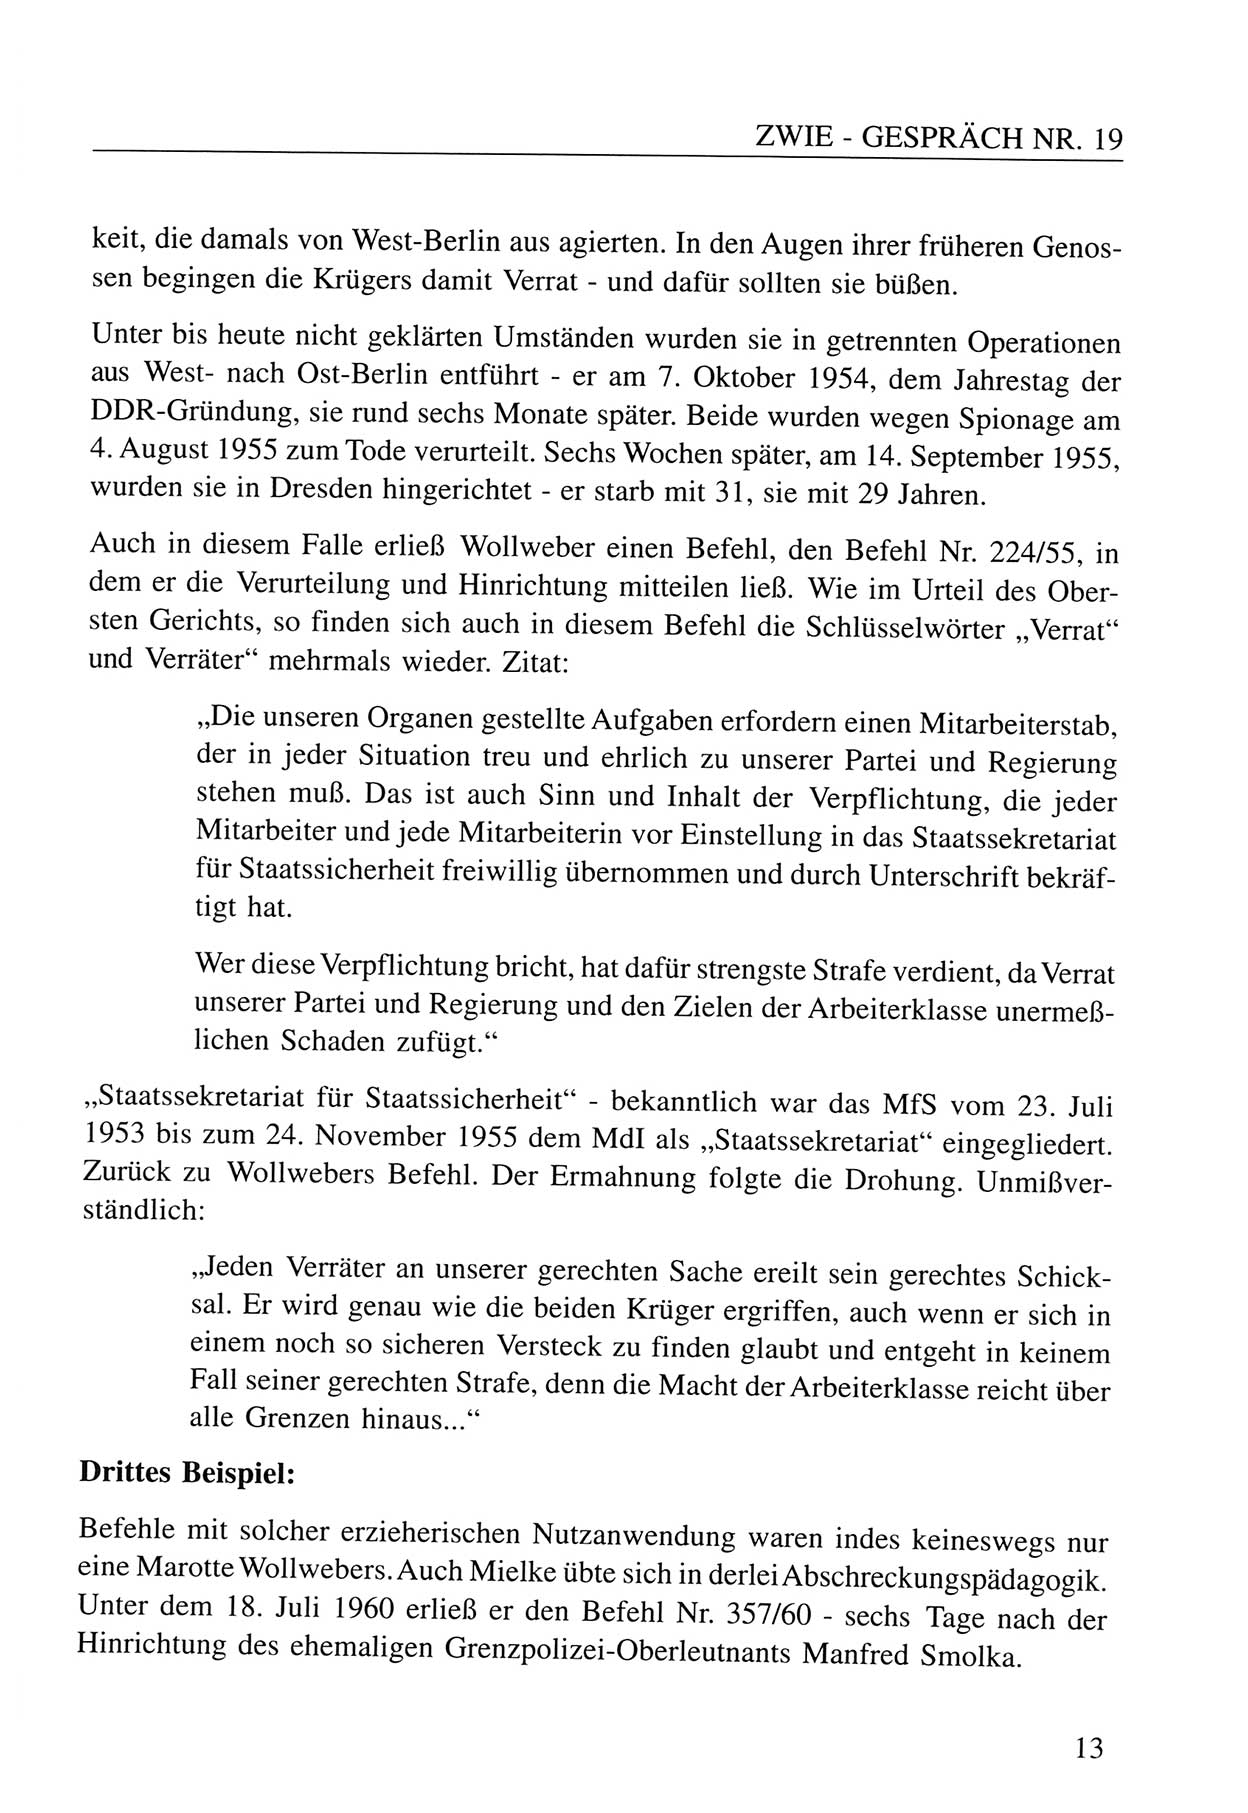 Zwie-Gespräch, Beiträge zum Umgang mit der Staatssicherheits-Vergangenheit [Deutsche Demokratische Republik (DDR)], Ausgabe Nr. 19, Berlin 1994, Seite 13 (Zwie-Gespr. Ausg. 19 1994, S. 13)